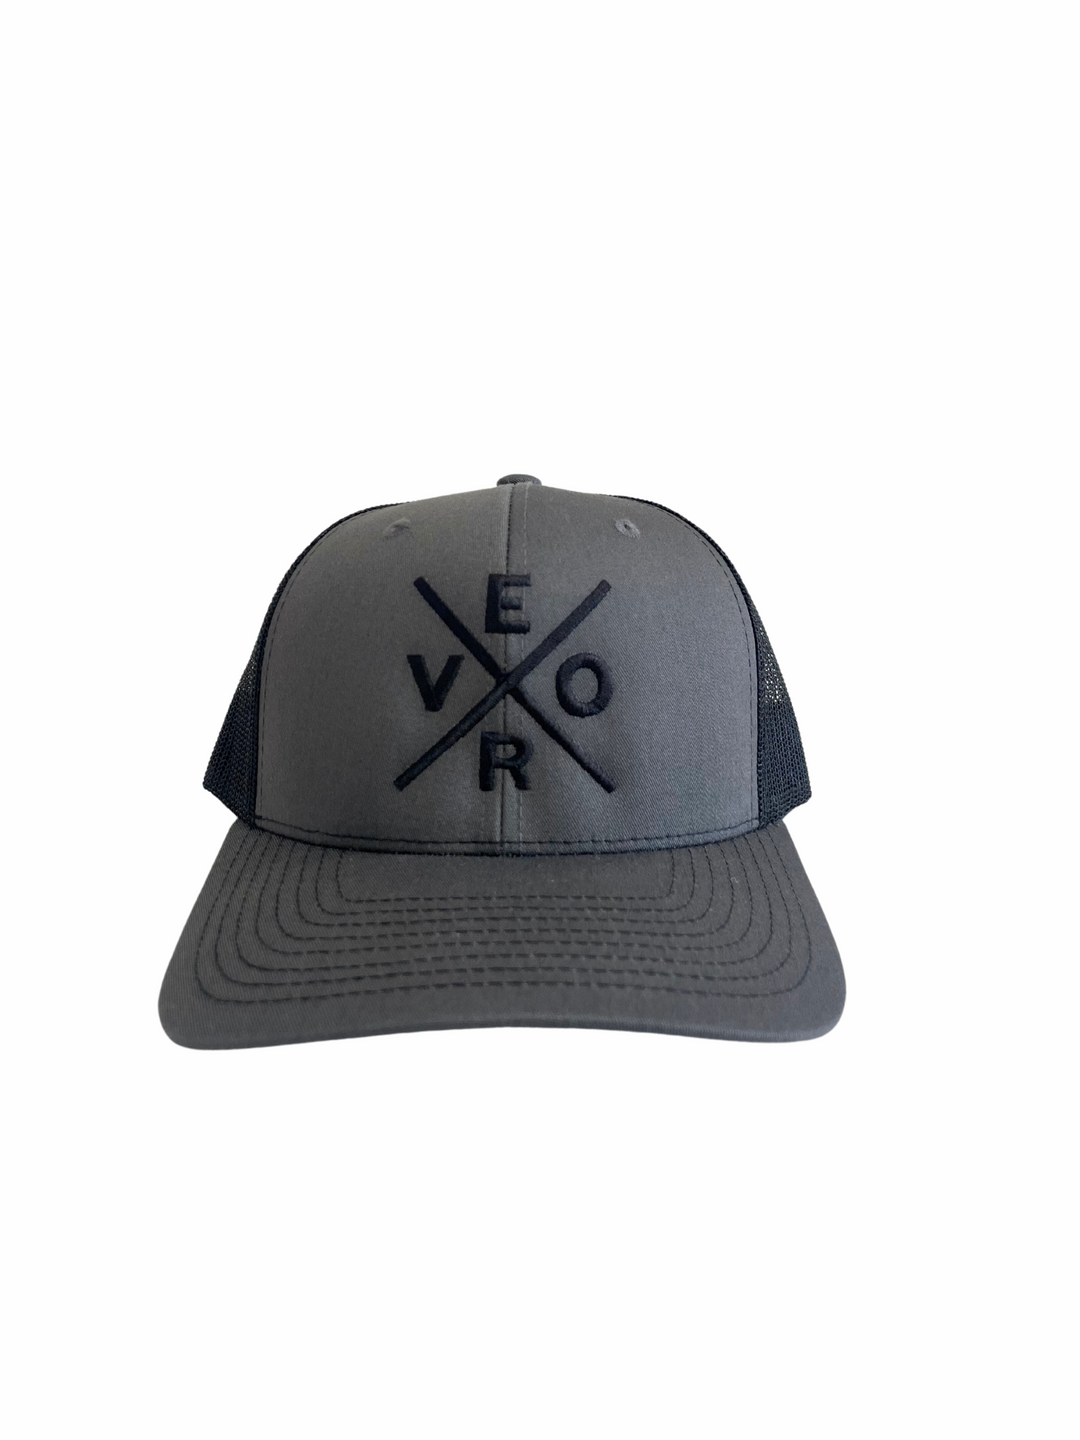 Vero Trucker Hat - Charcoal Grey & Black